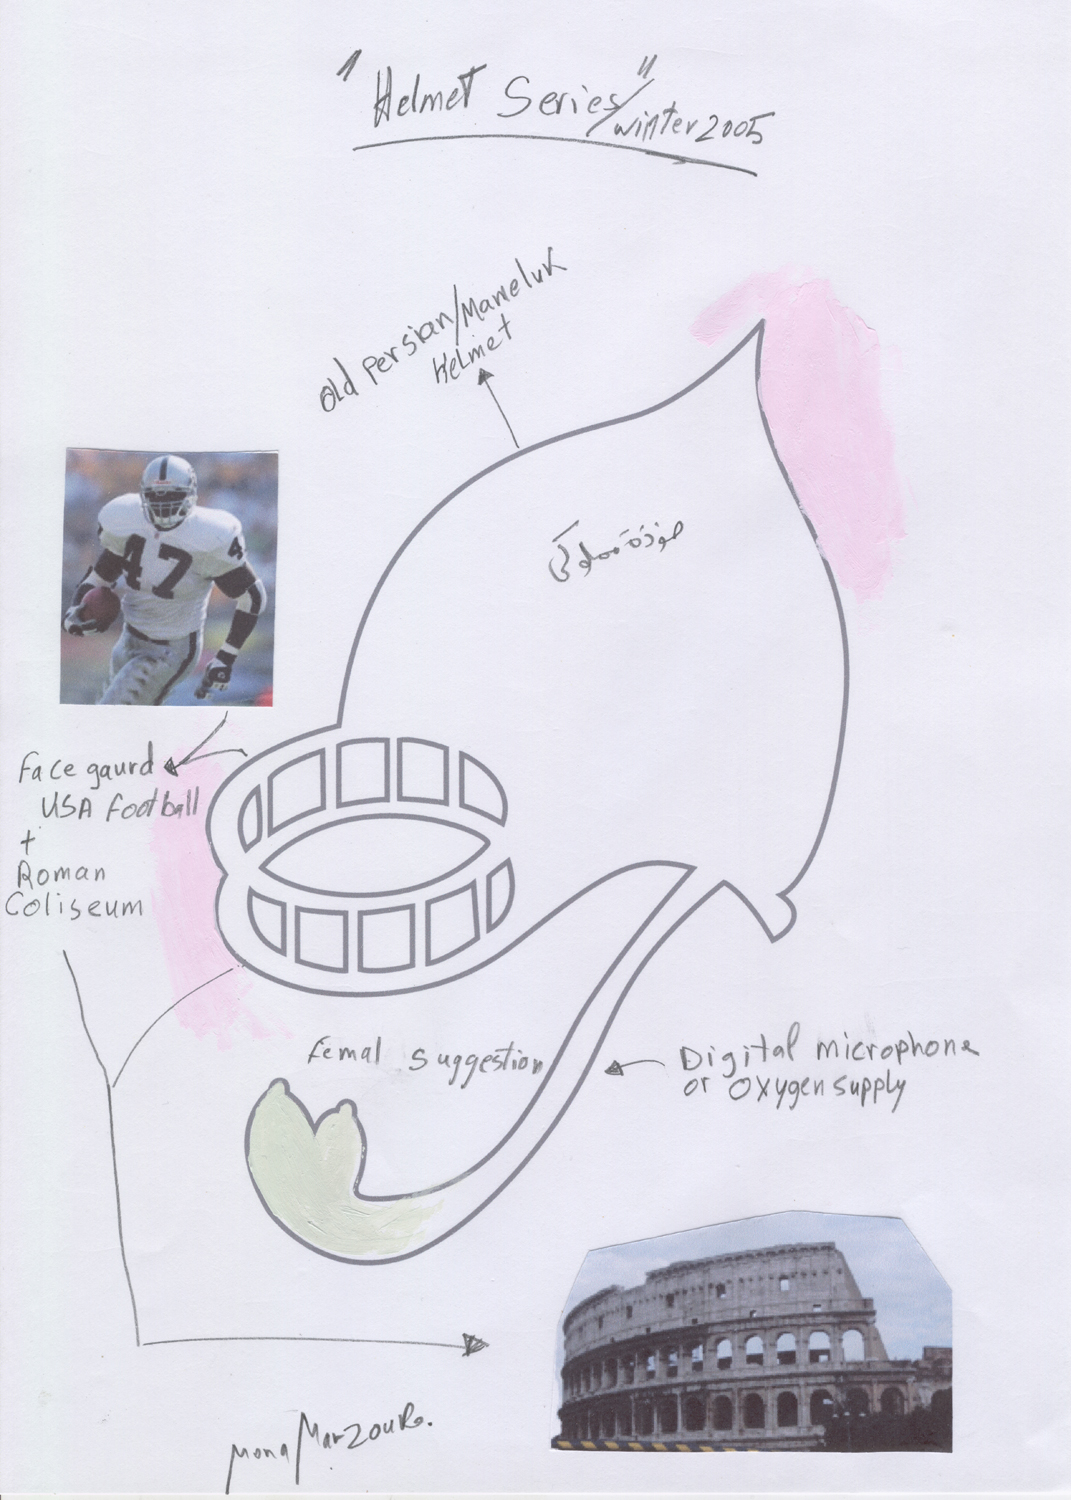  Helmet III Sketch, 2005 